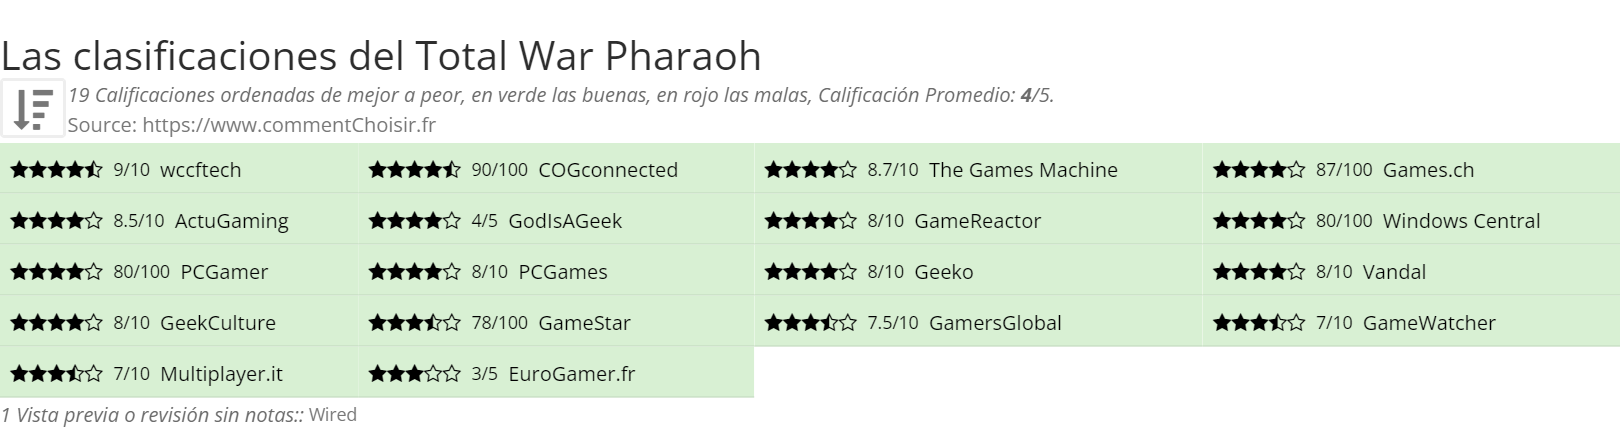 Ratings Total War Pharaoh